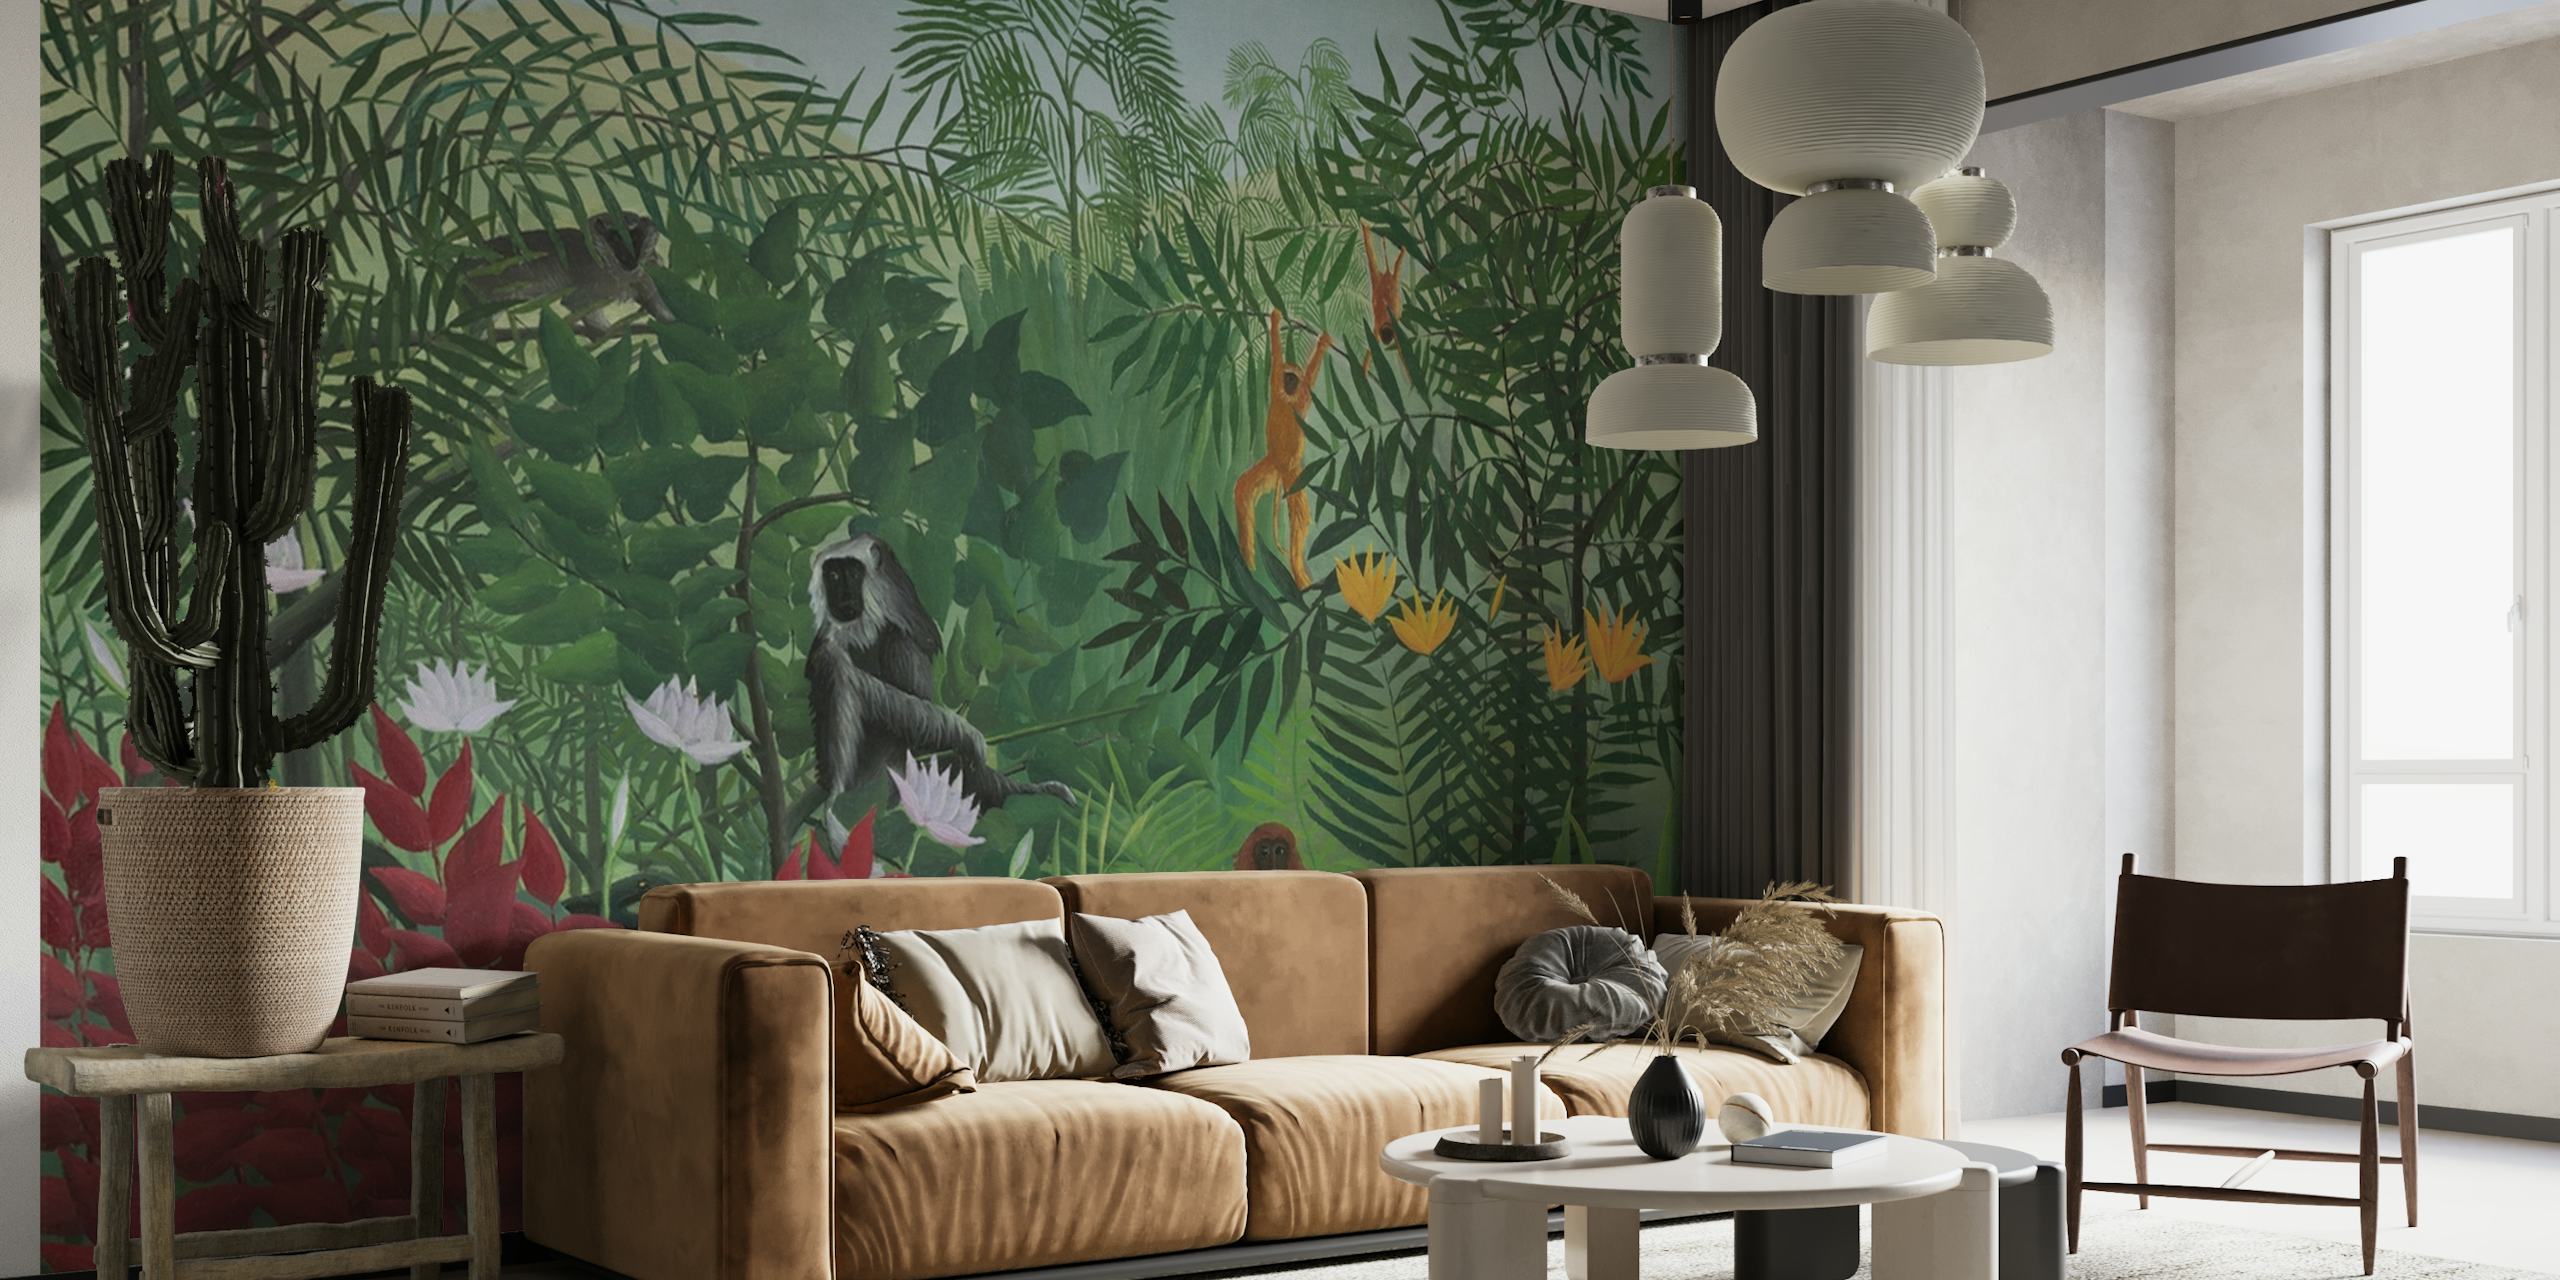 Mural que representa una escena de bosque tropical con monos, inspirado en el estilo artístico de Henri Rousseau.